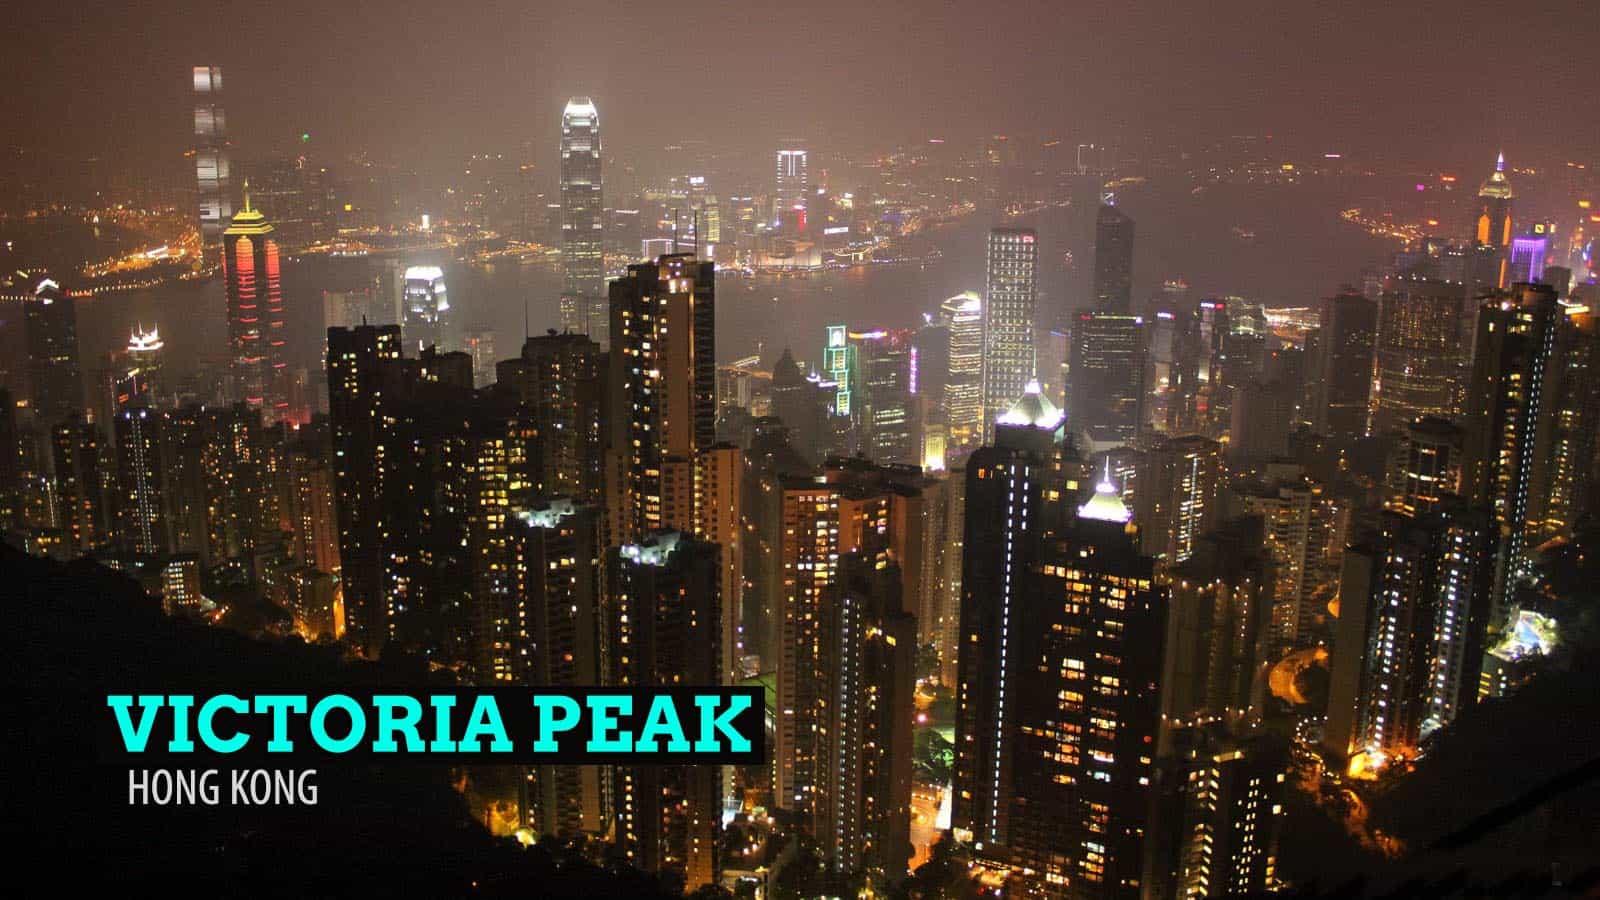 维多利亚山顶:香港最高处的超现实视角